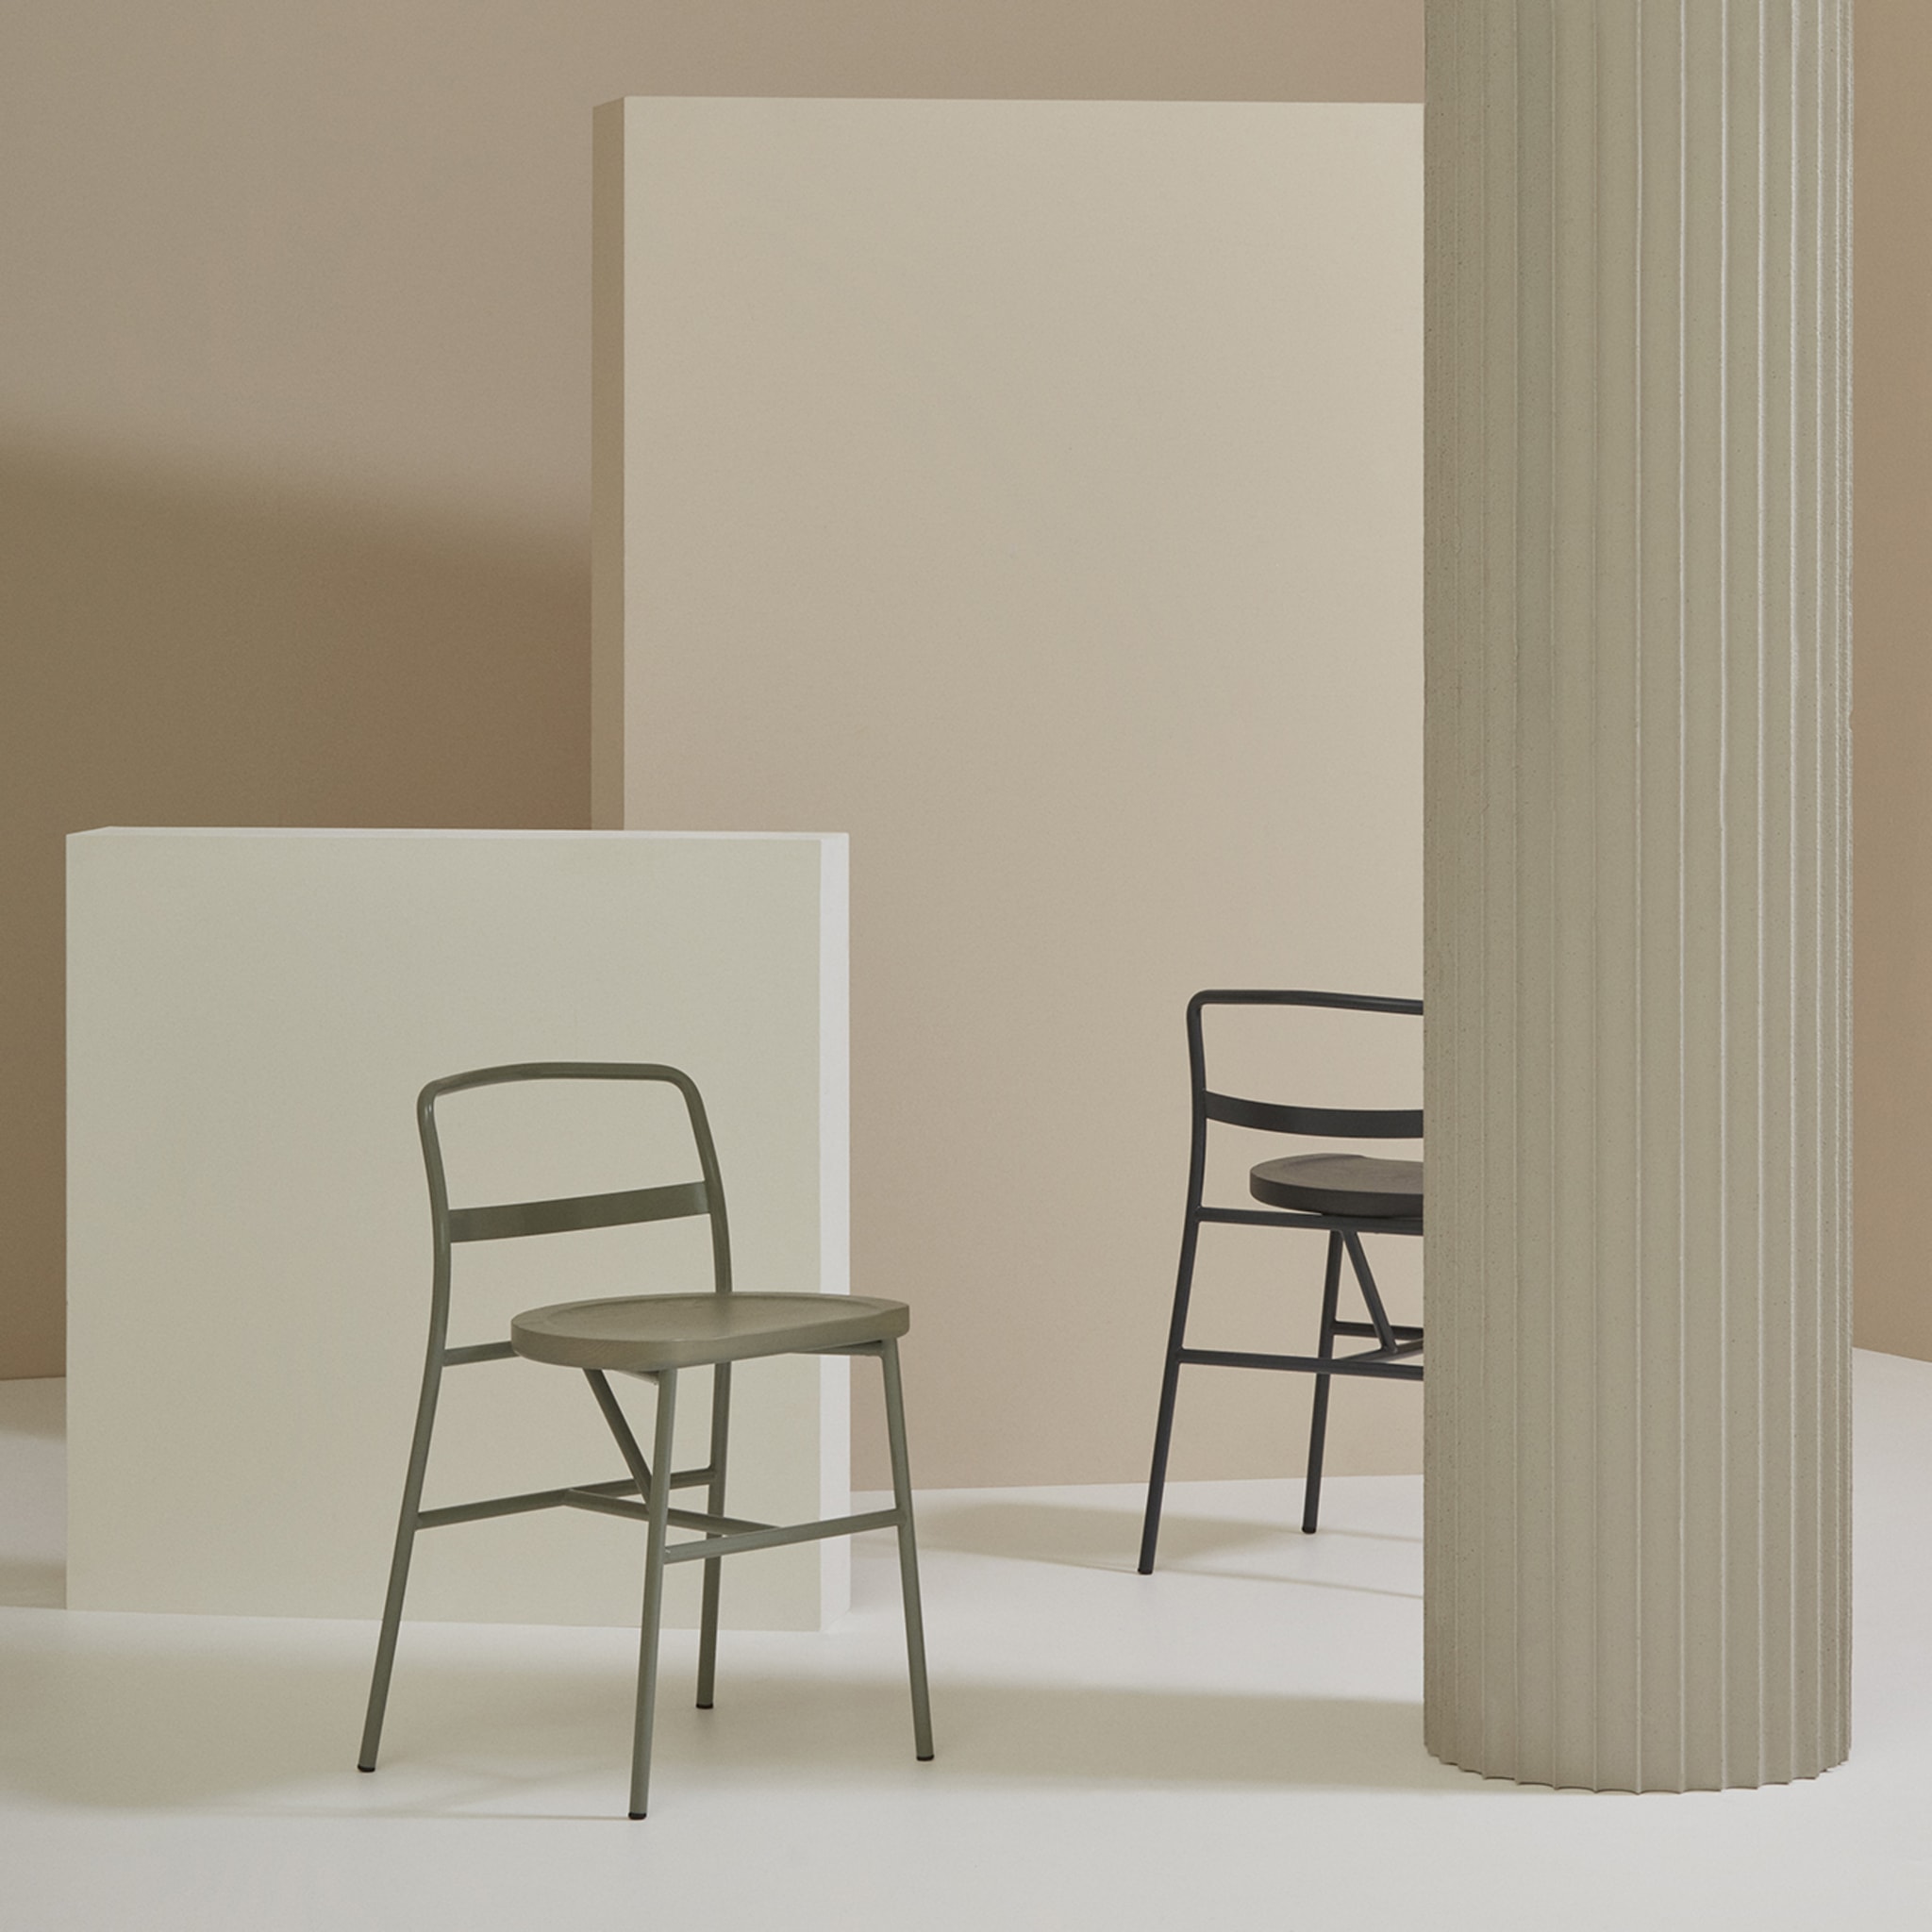 Puccio 726 Anthracite-Gray Chair by Emilio Nanni - Alternative view 3